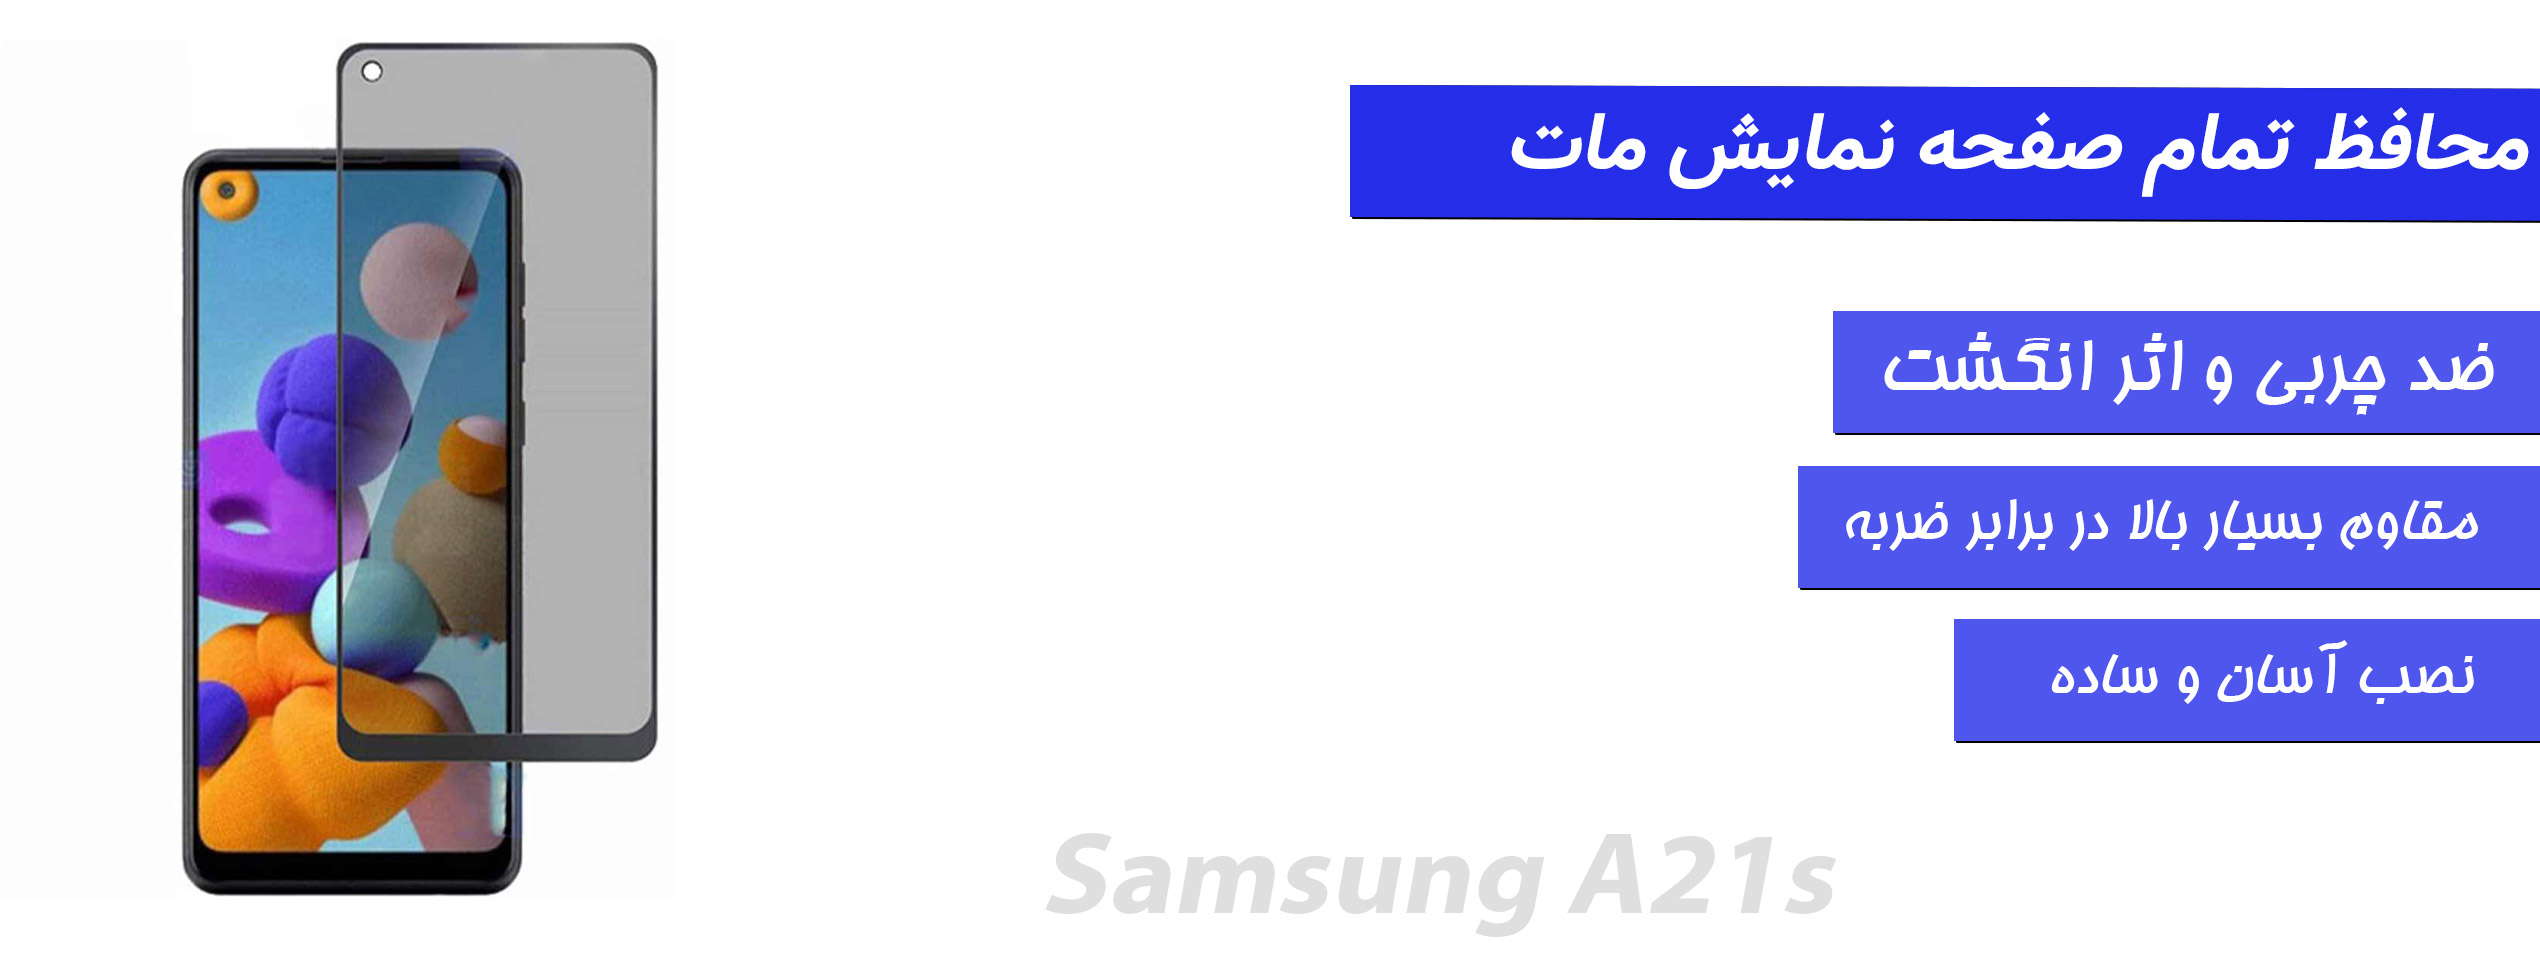 محافظ صفحه و گلس مات موبایل سامسونگ Samsung A21s